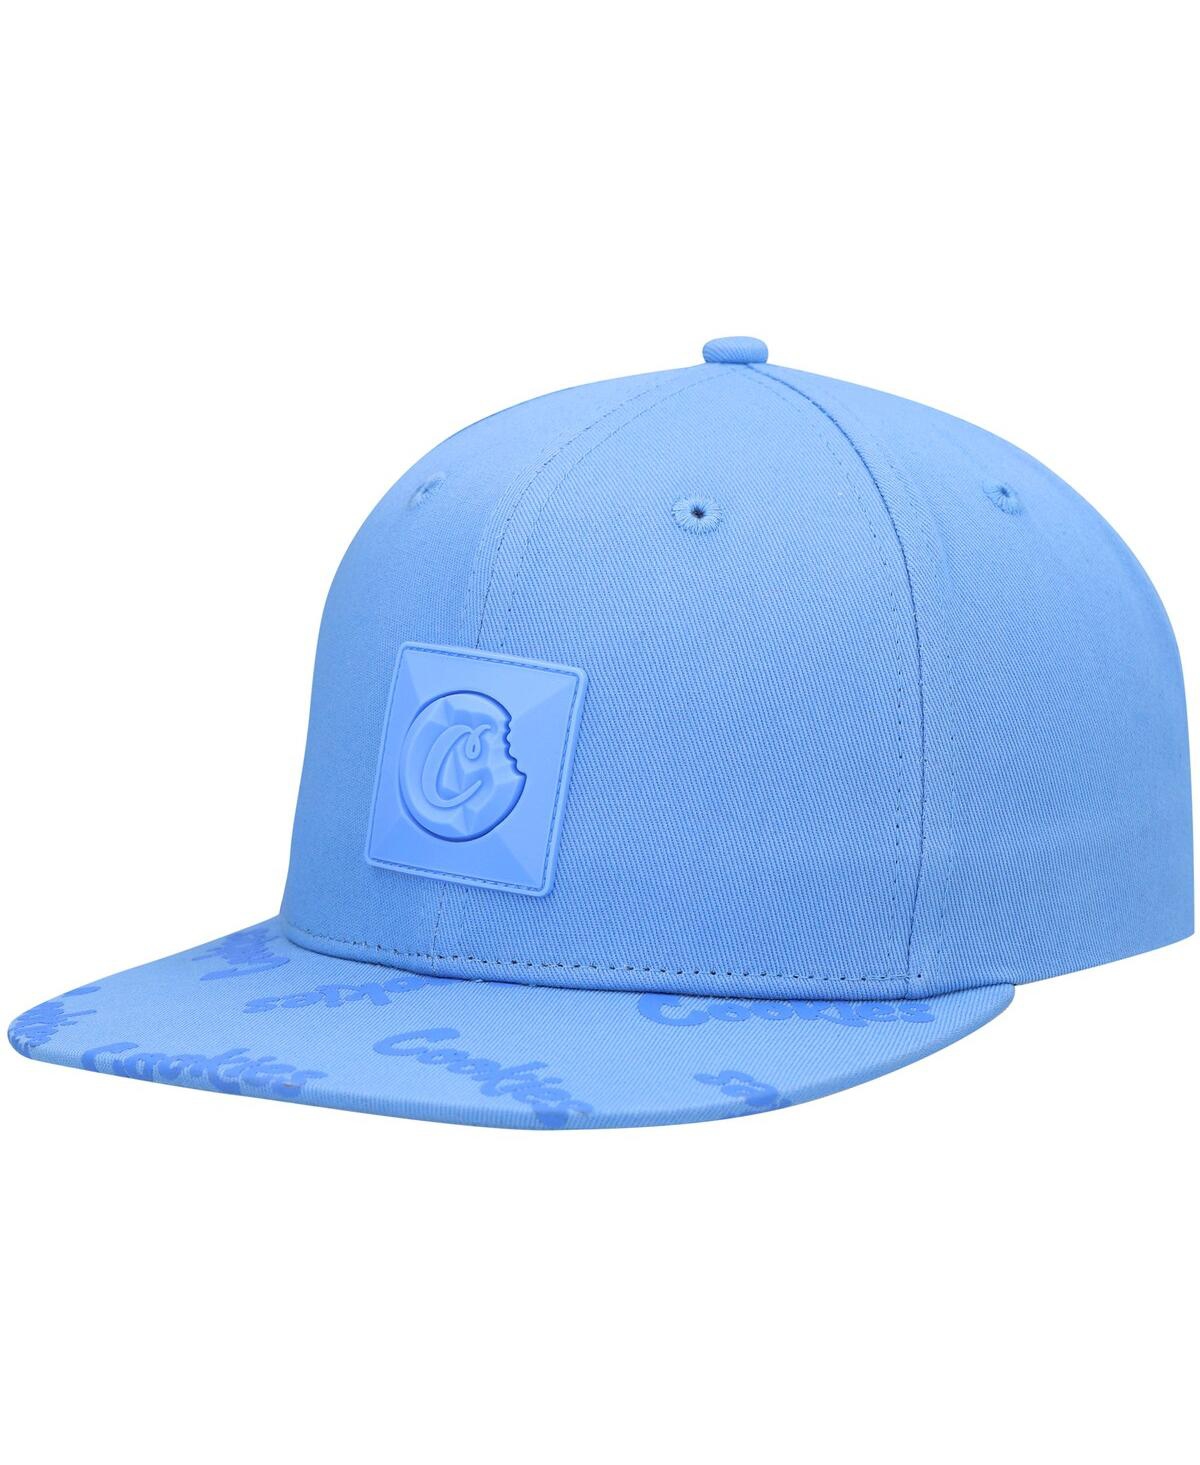 Cookies Men's  Light Blue Monaco Snapback Hat